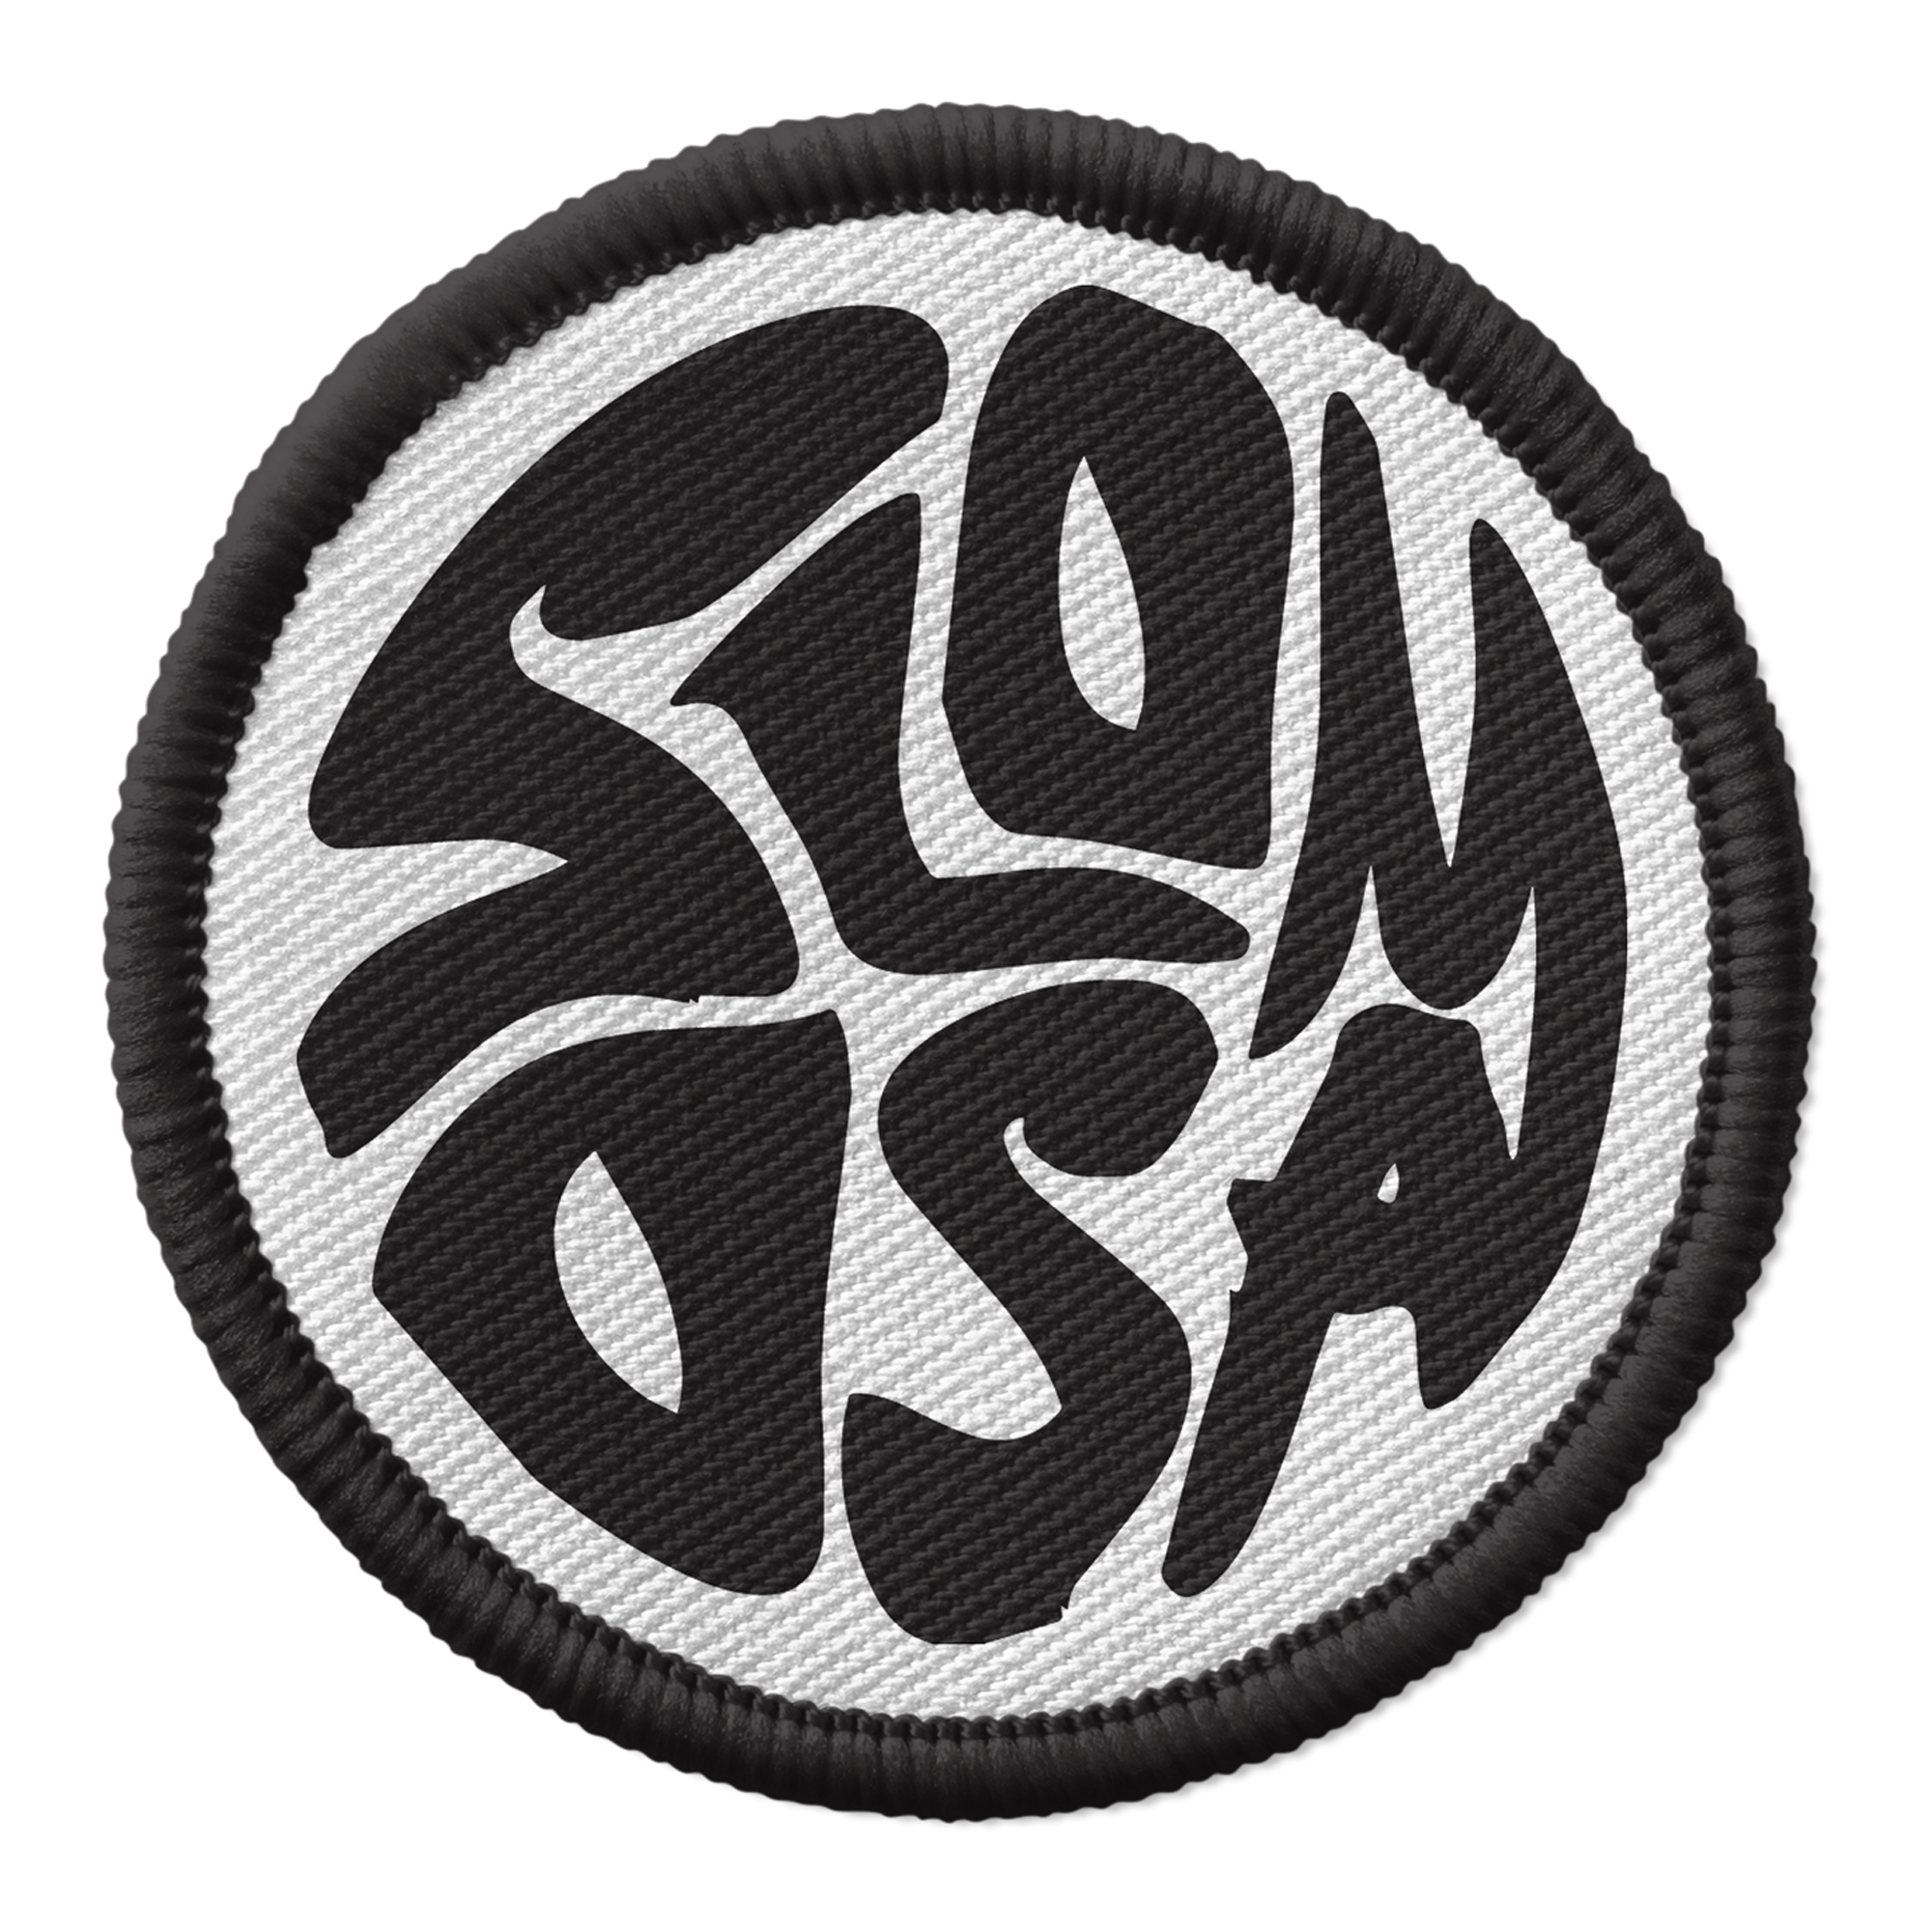 Slomosa - Tundra Rock CD